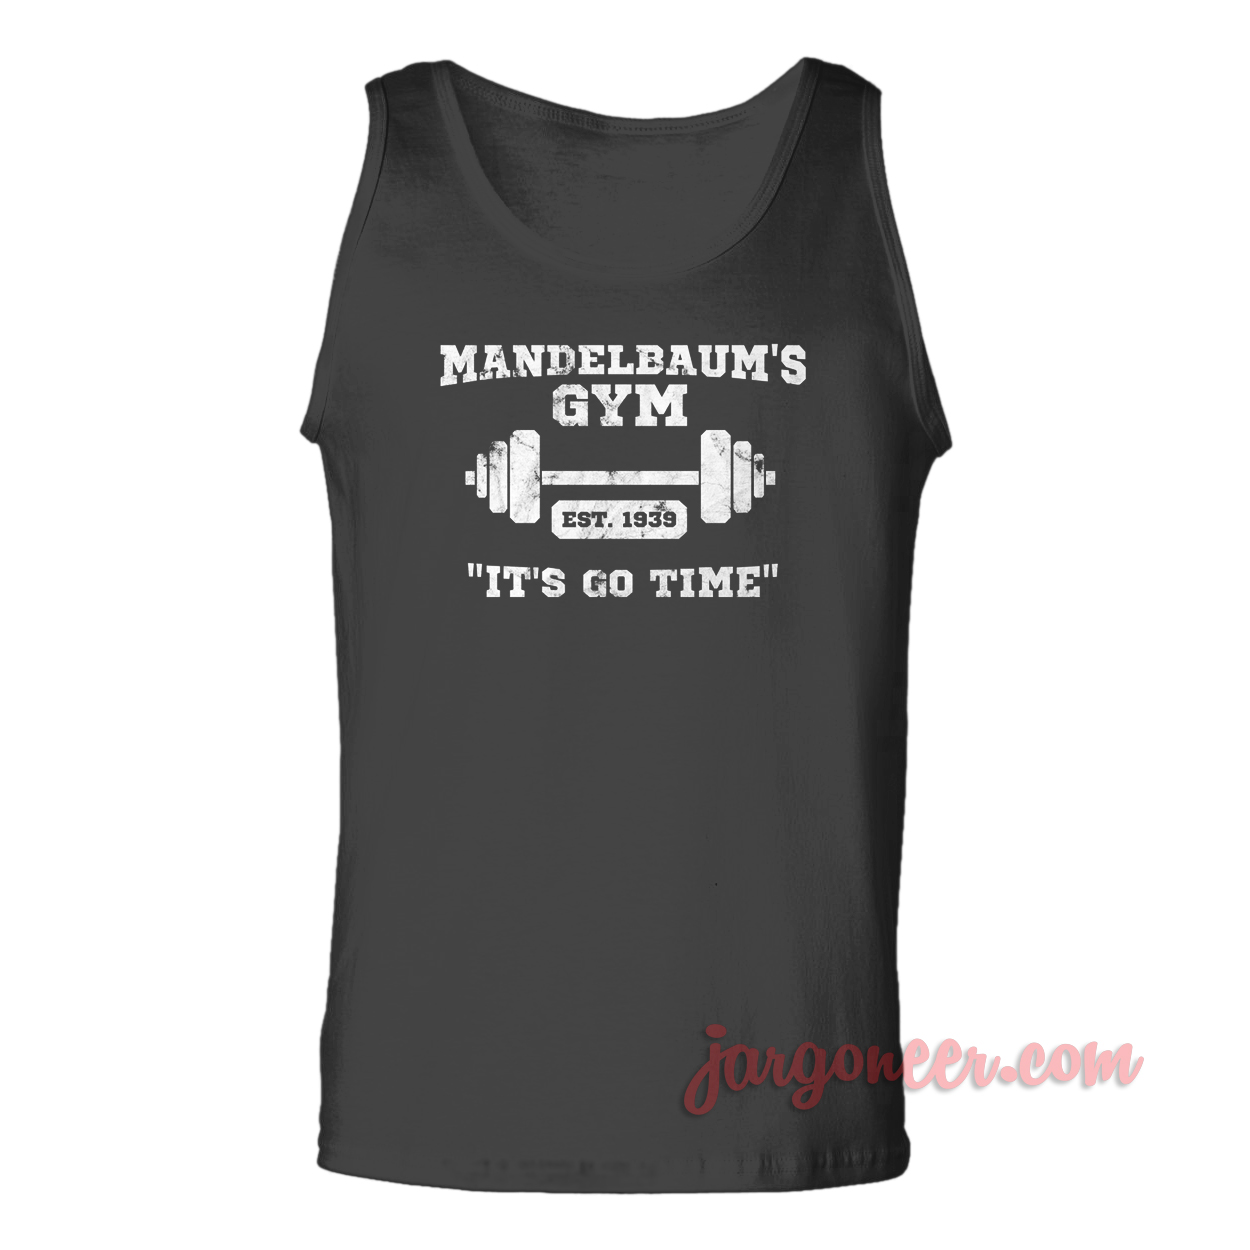 Mandelbaums Gym - Shop Unique Graphic Cool Shirt Designs